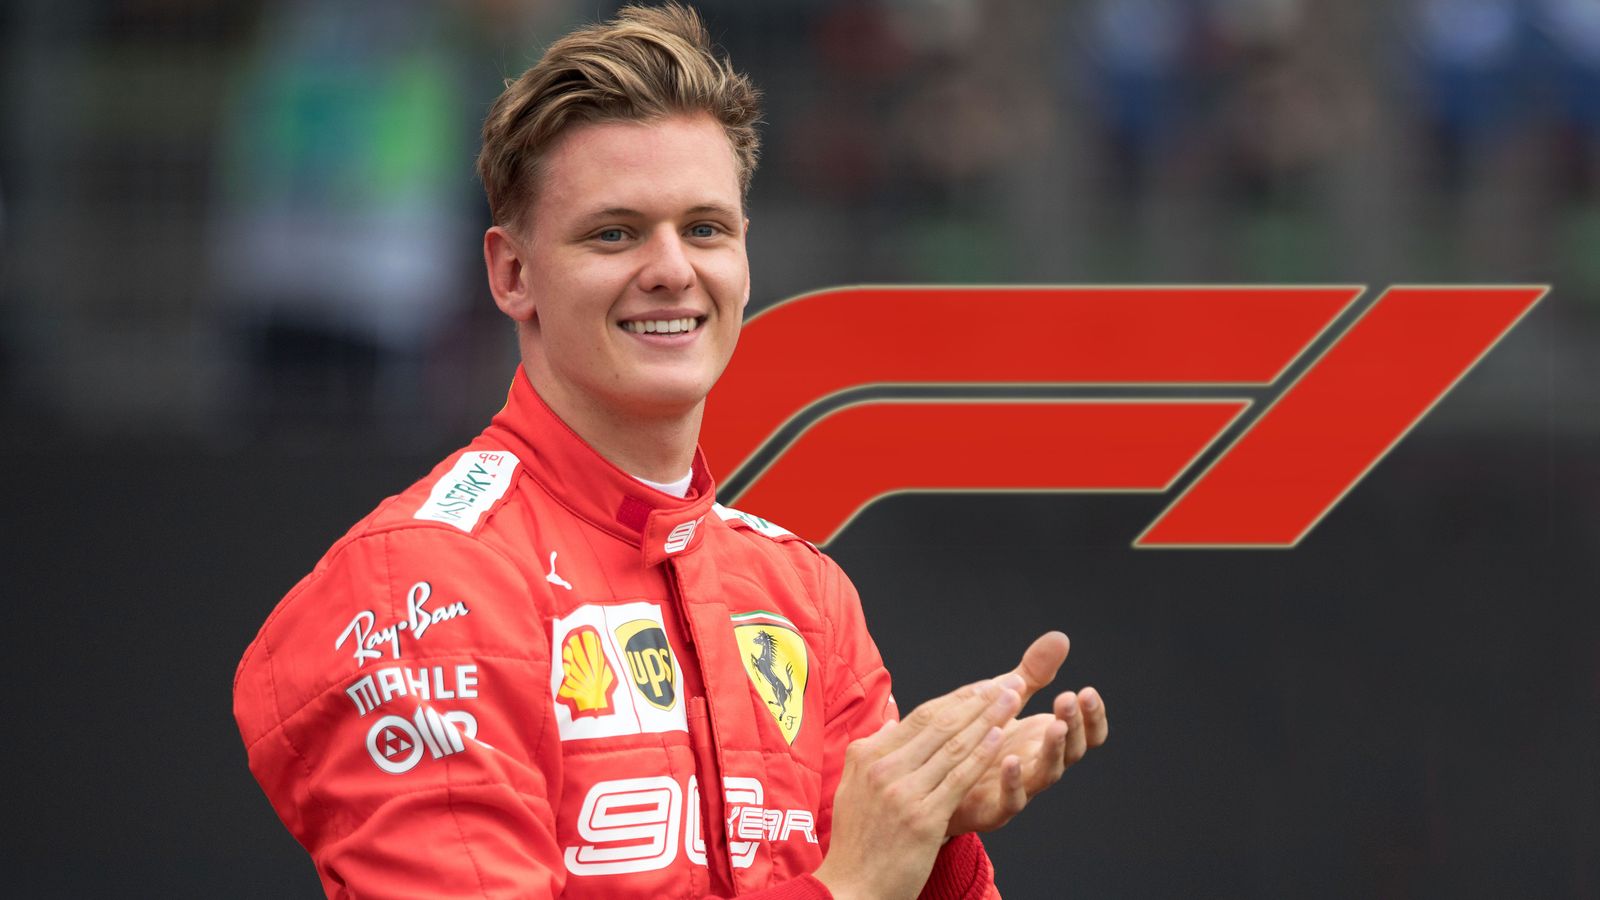 Neues Von Michael Schumacher 2021